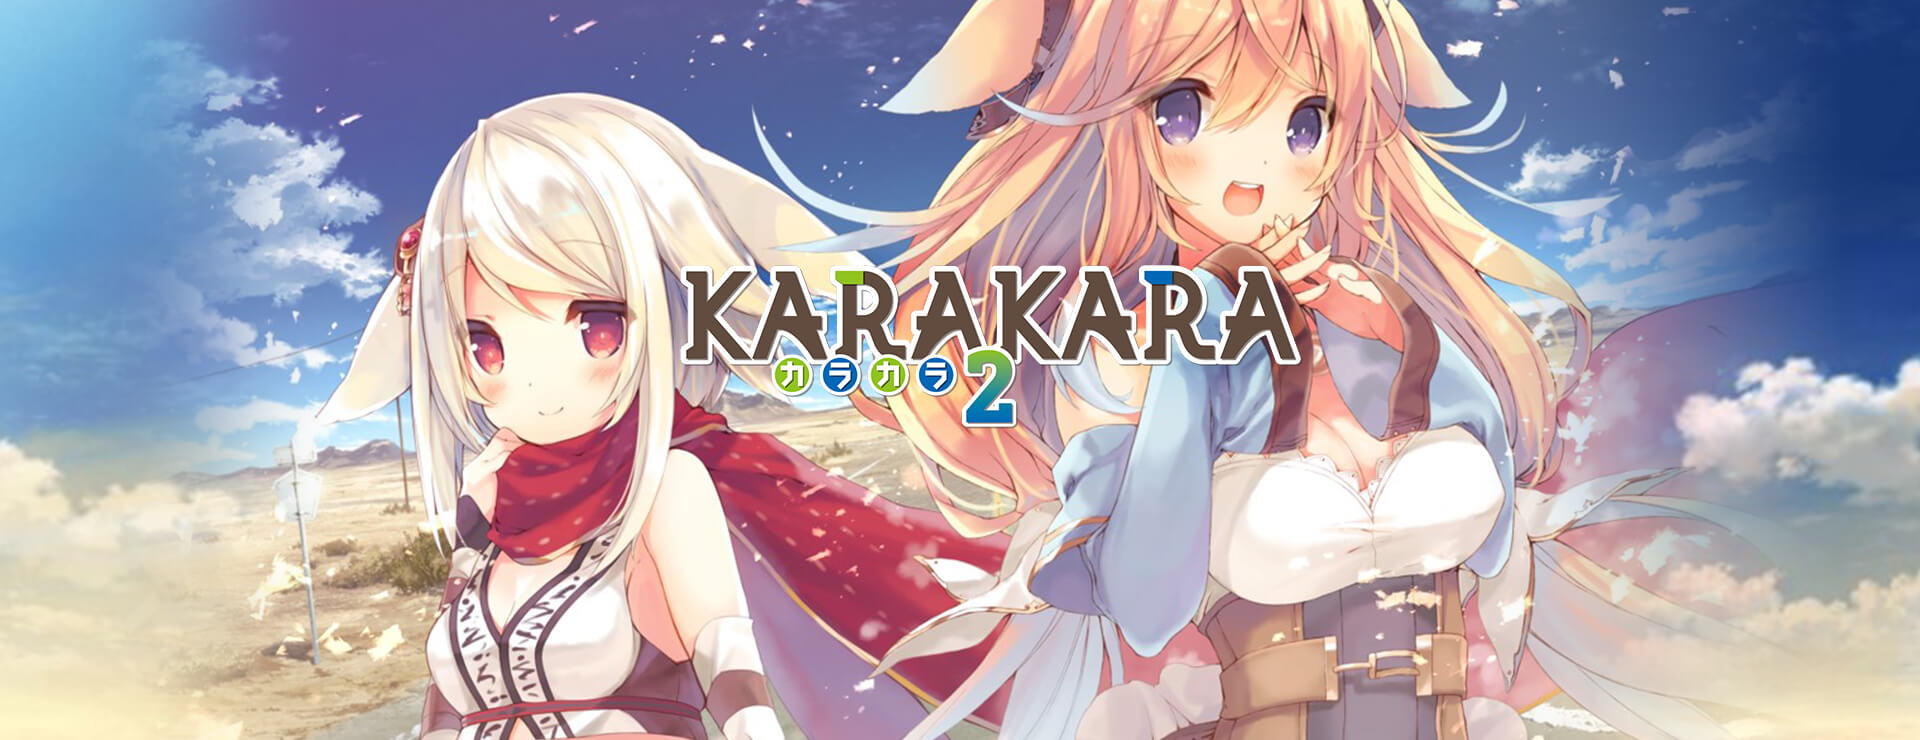 KARAKARA2 - Novela Visual Juego